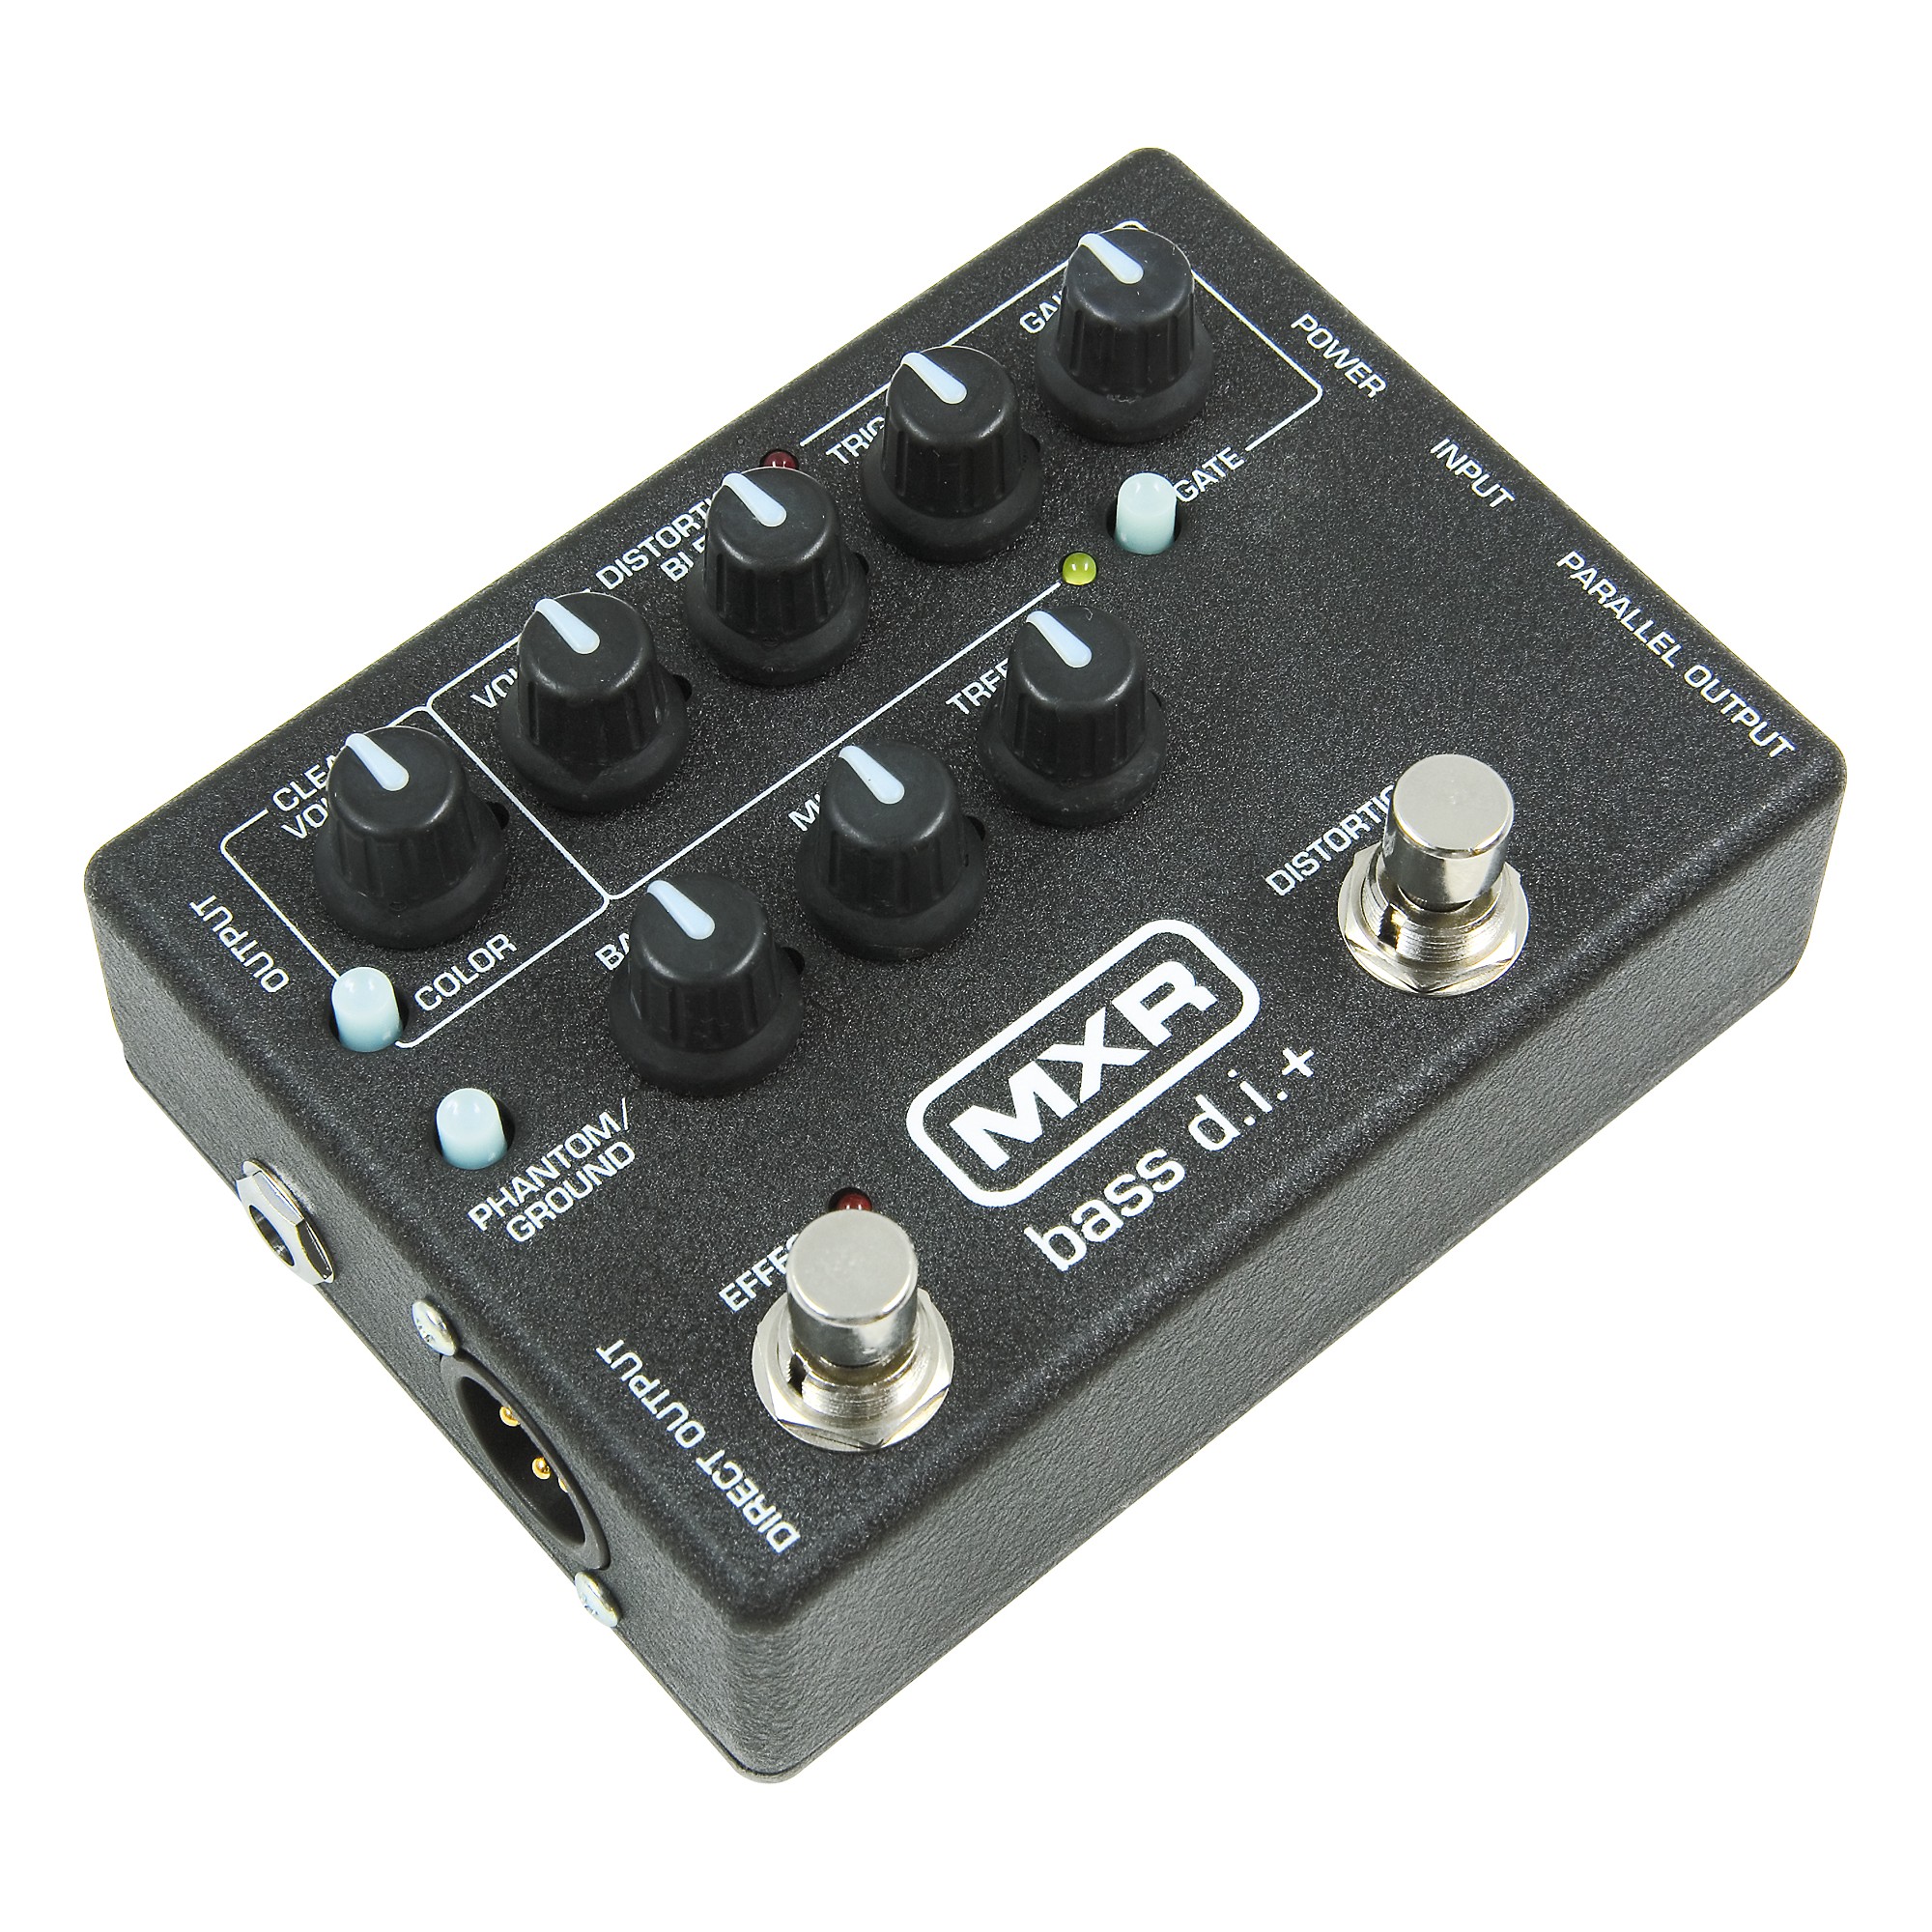 MXR M-80 bass d.i.+ （M80）-